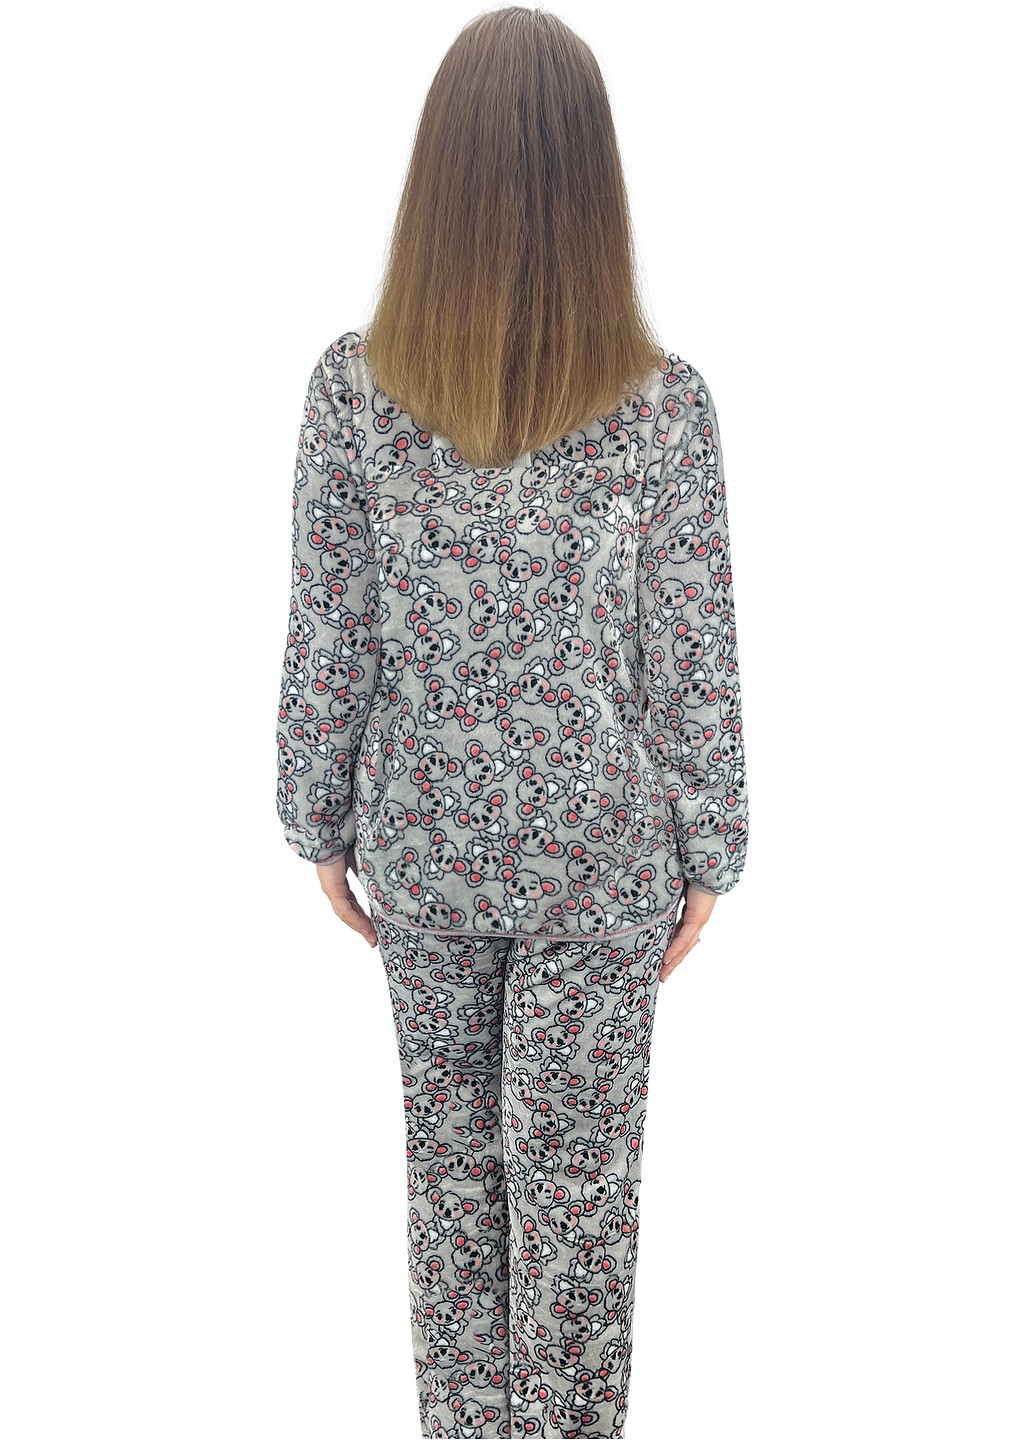 Серая всесезон пижама женская махровая коала кофта + брюки Жемчужина стилей 1412